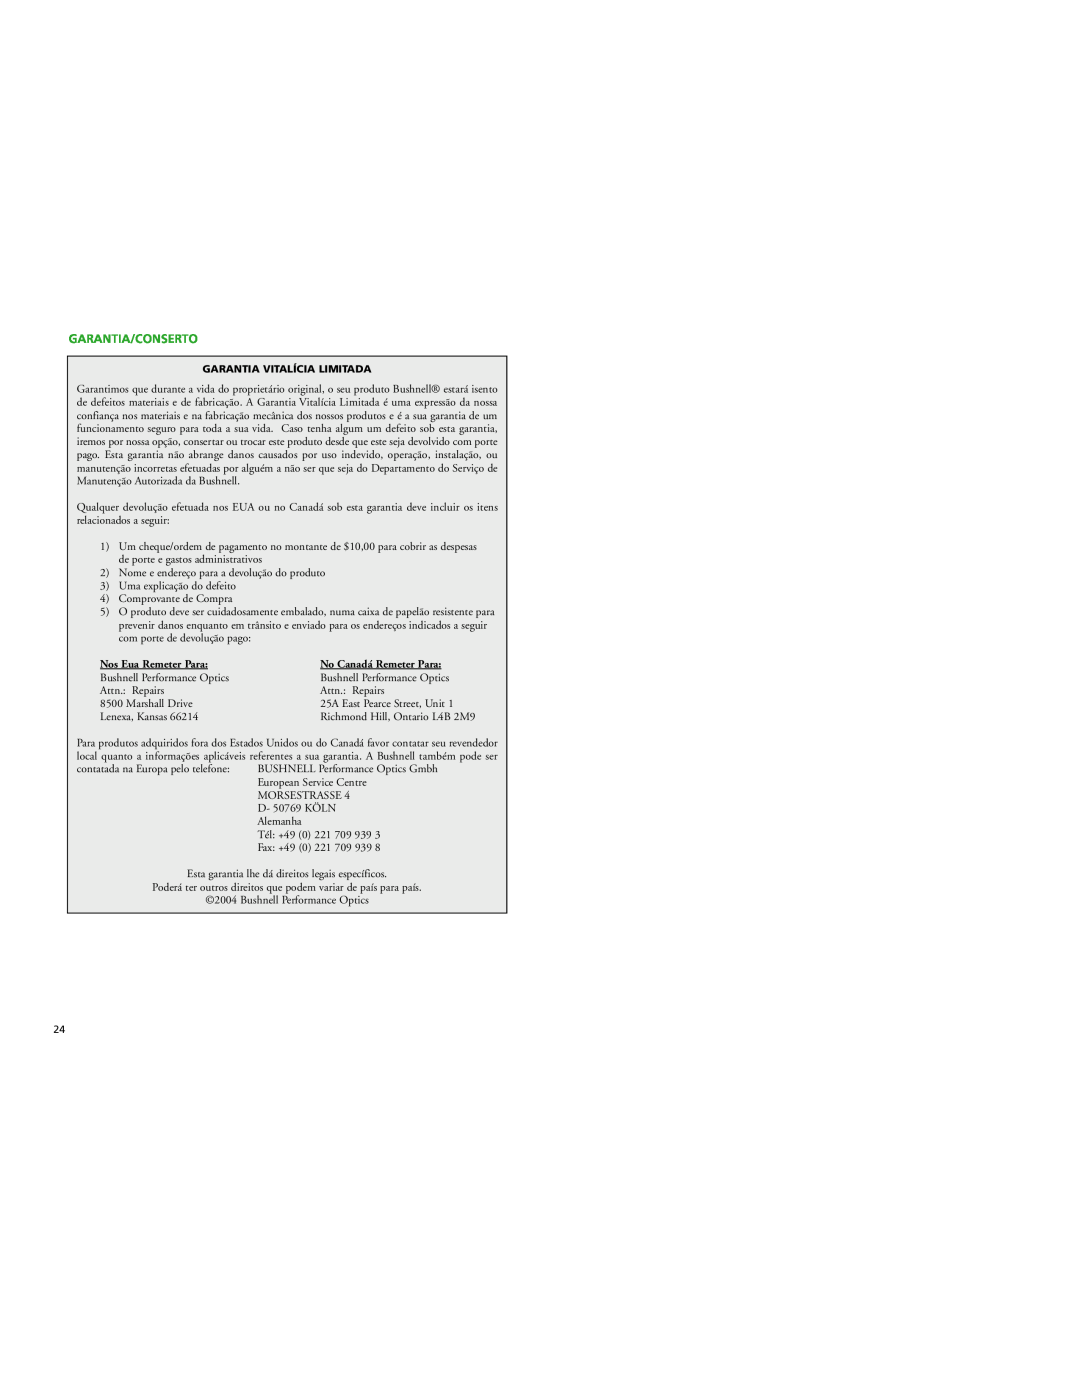 Bushnell 26-2024W, 26-4050 instruction manual Garantia/Conserto, Nos Eua Remeter Para, No Canadá Remeter Para 